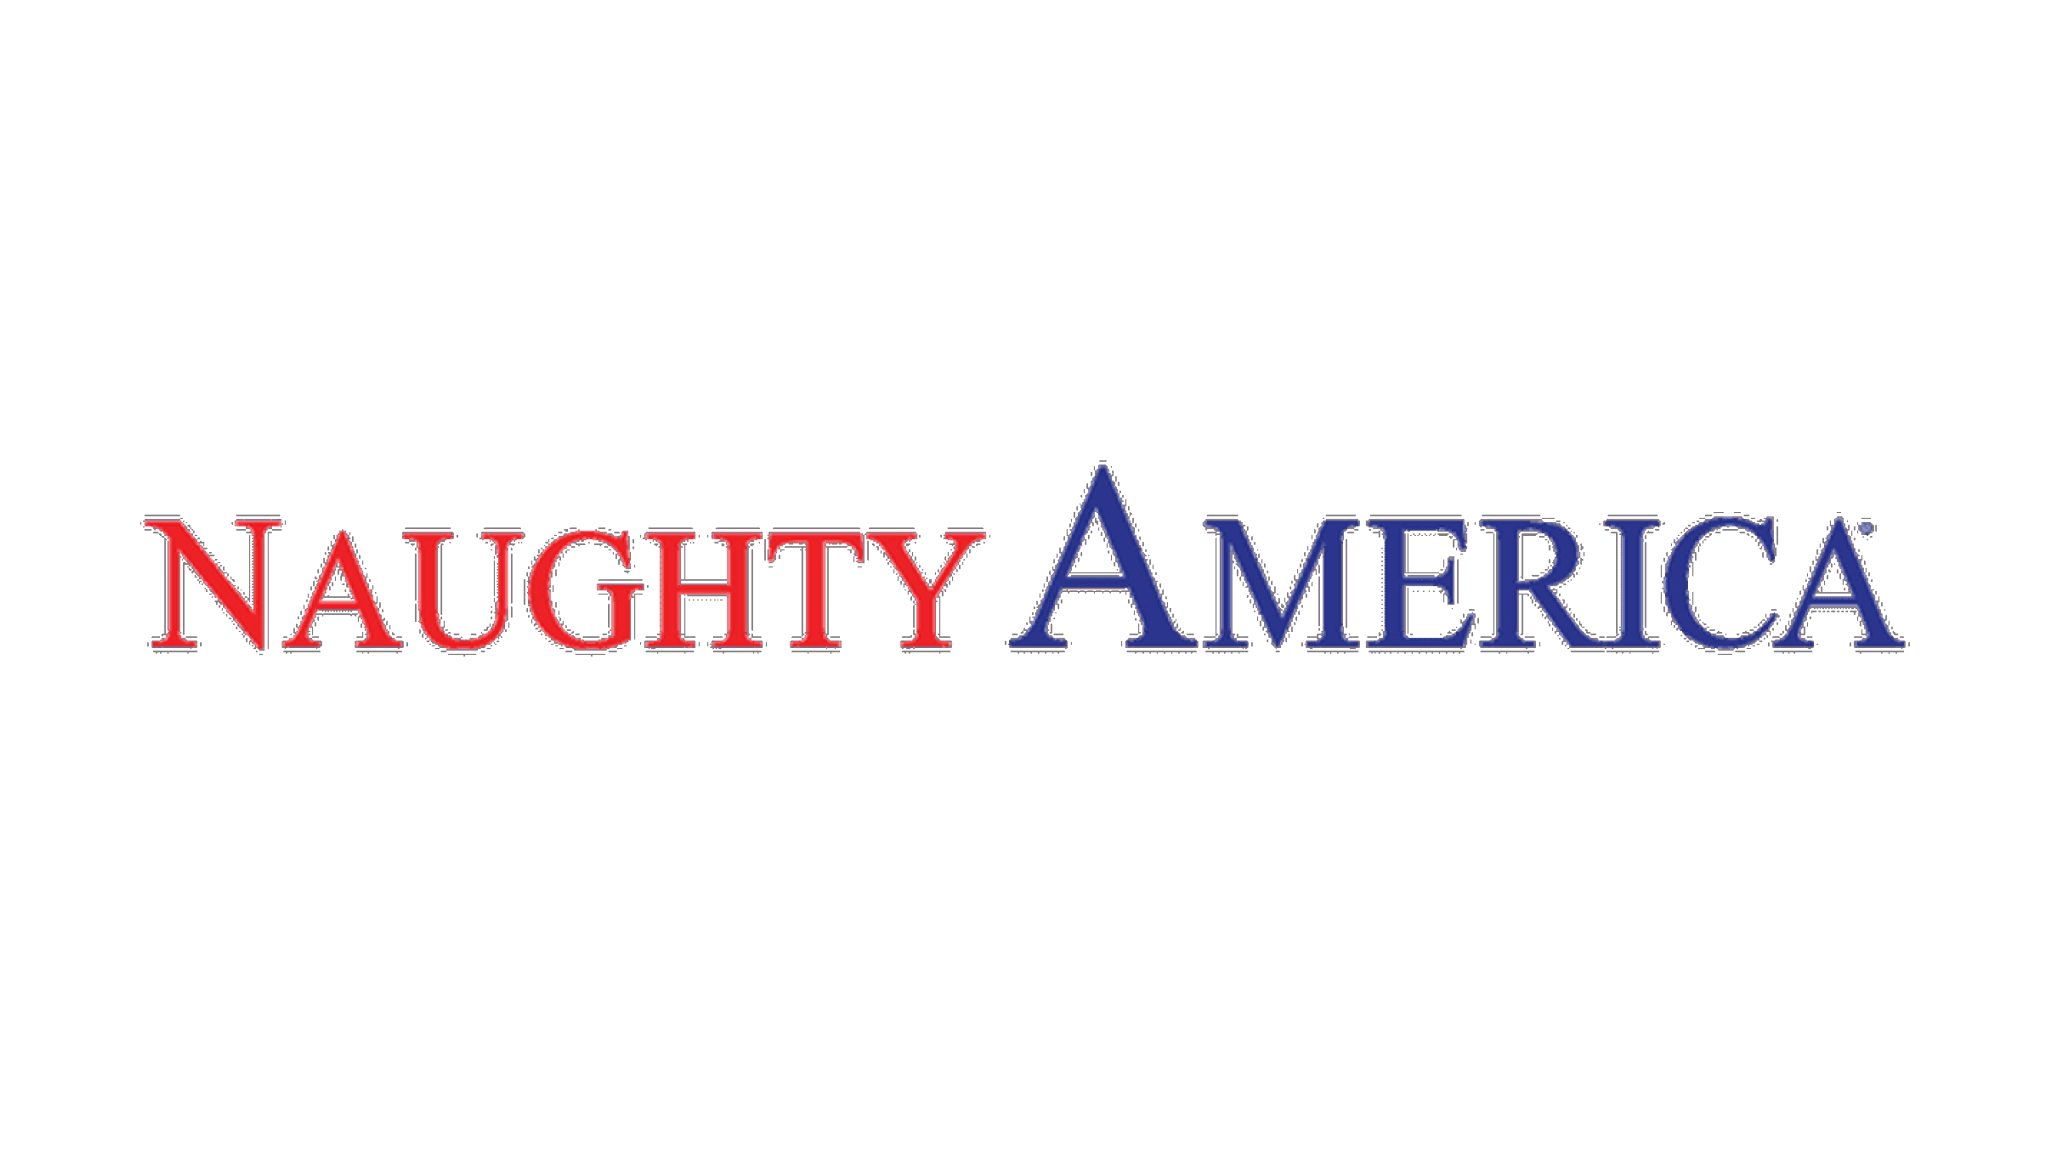 NaughtyAmerica logo.